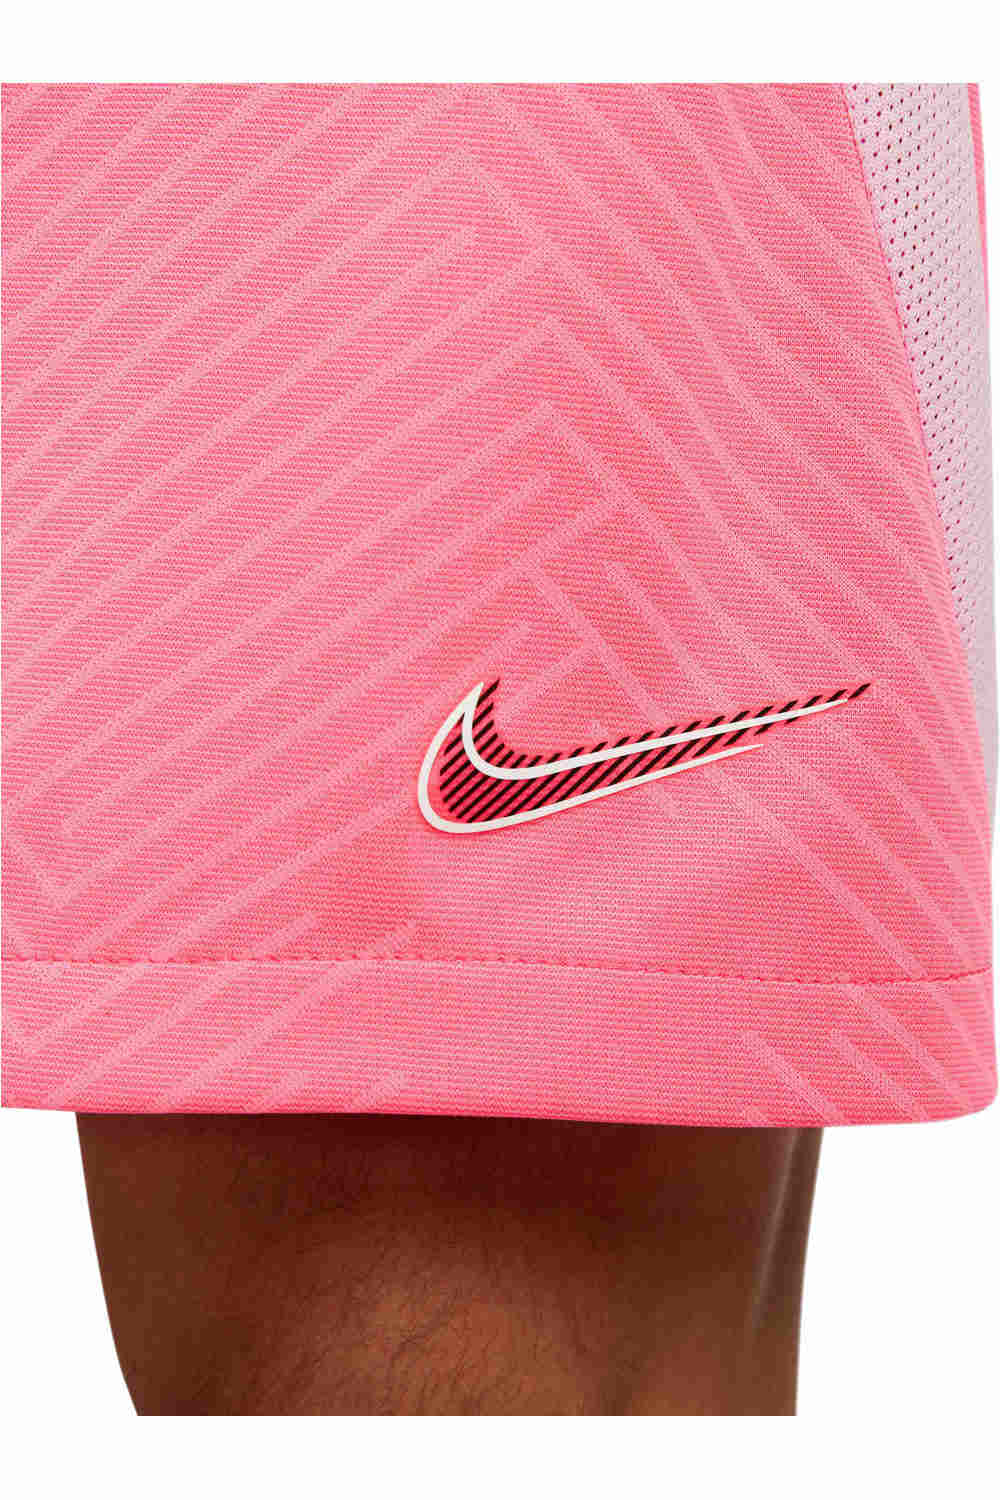 Nike pantalones cortos futbol PANTALON CORTO DRI-FIT STRIKE vista detalle